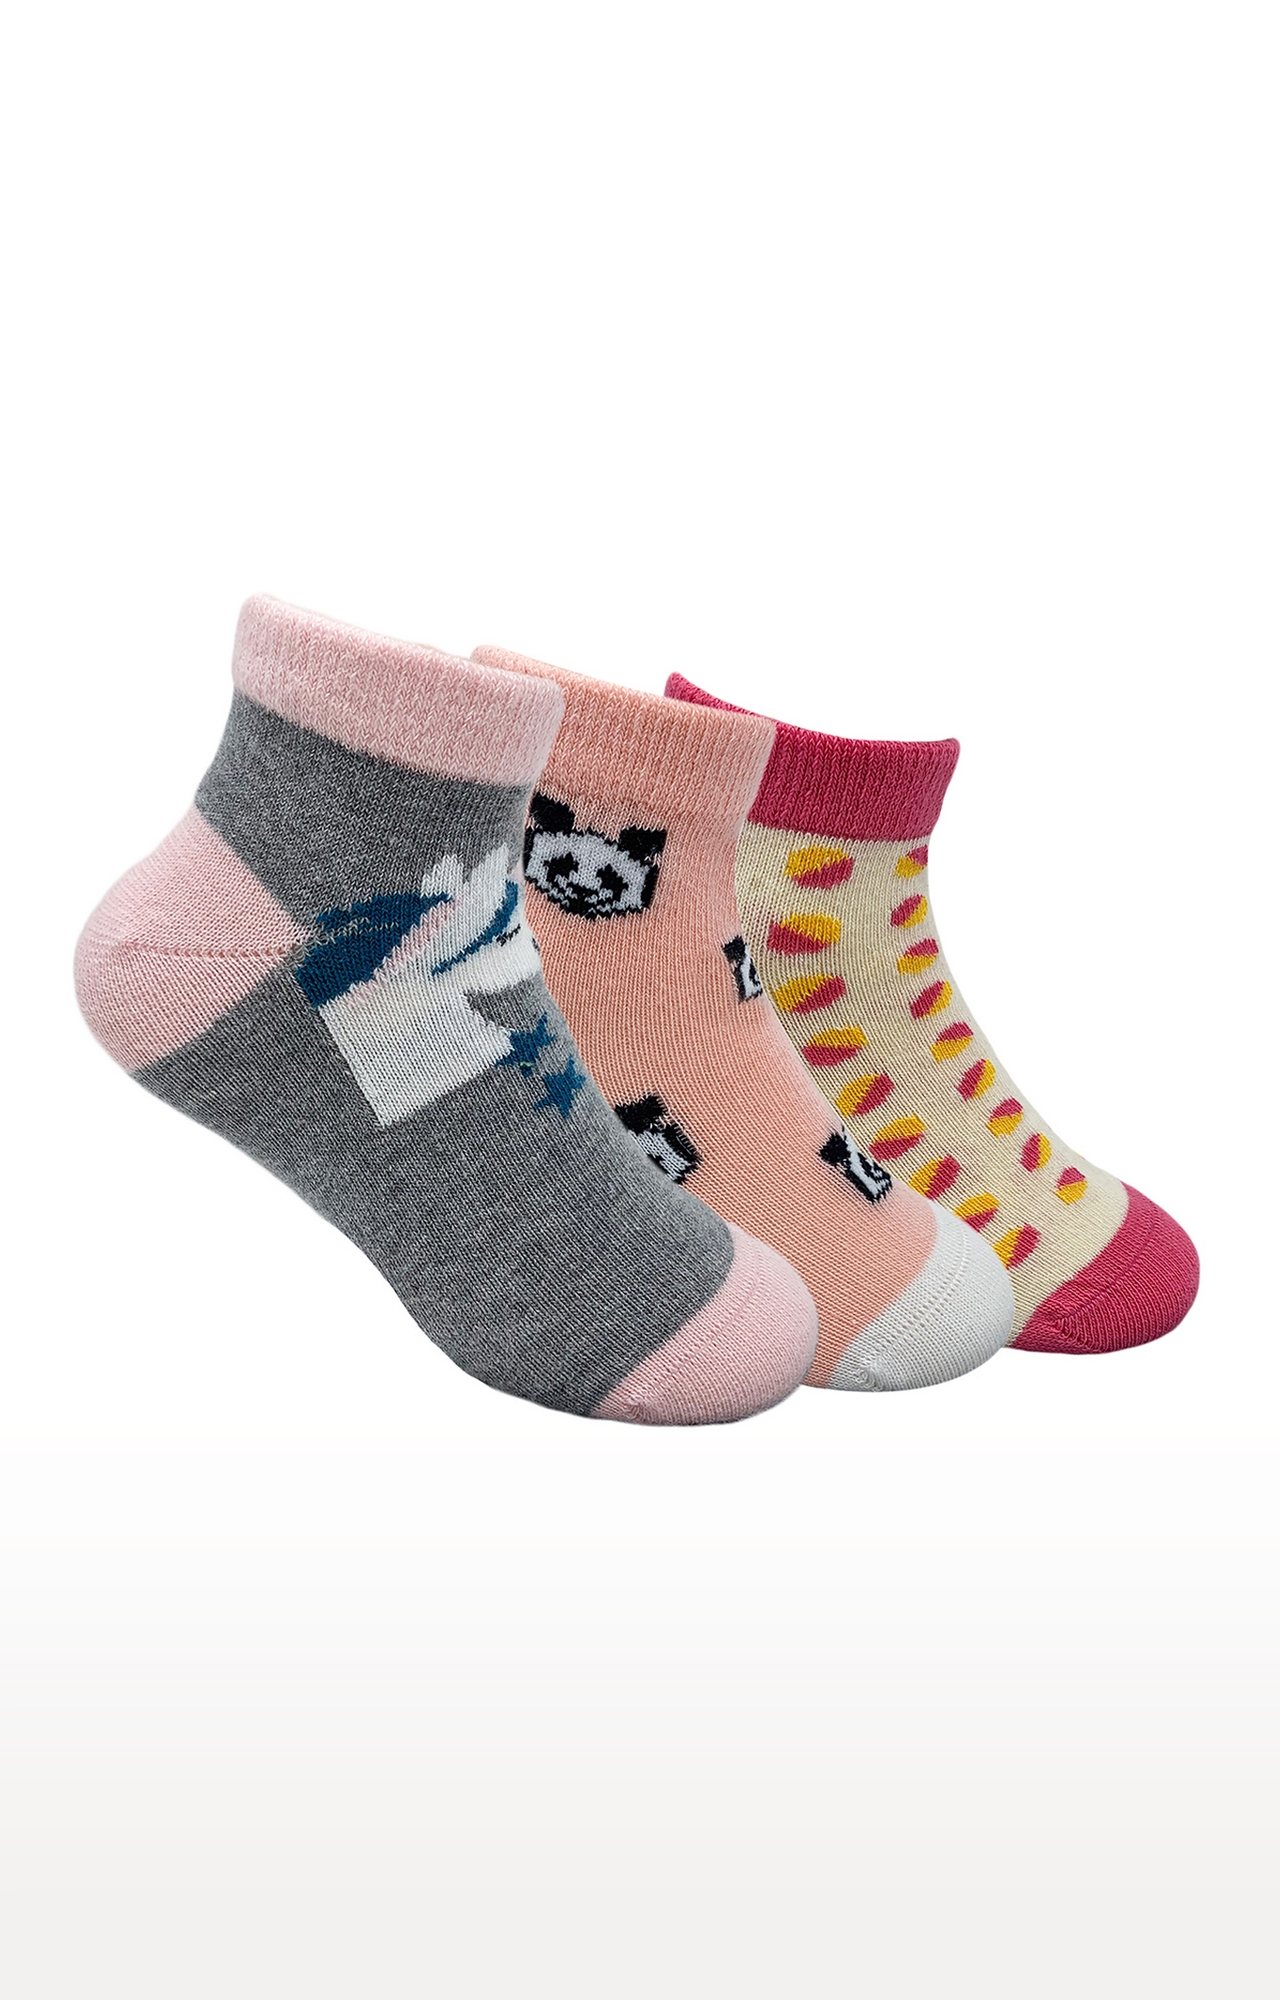 Mint & Oak | Mint & Oak Pretty In Pink Cotton Multi Ankle Length Socks for Kids - Pack of 3 0